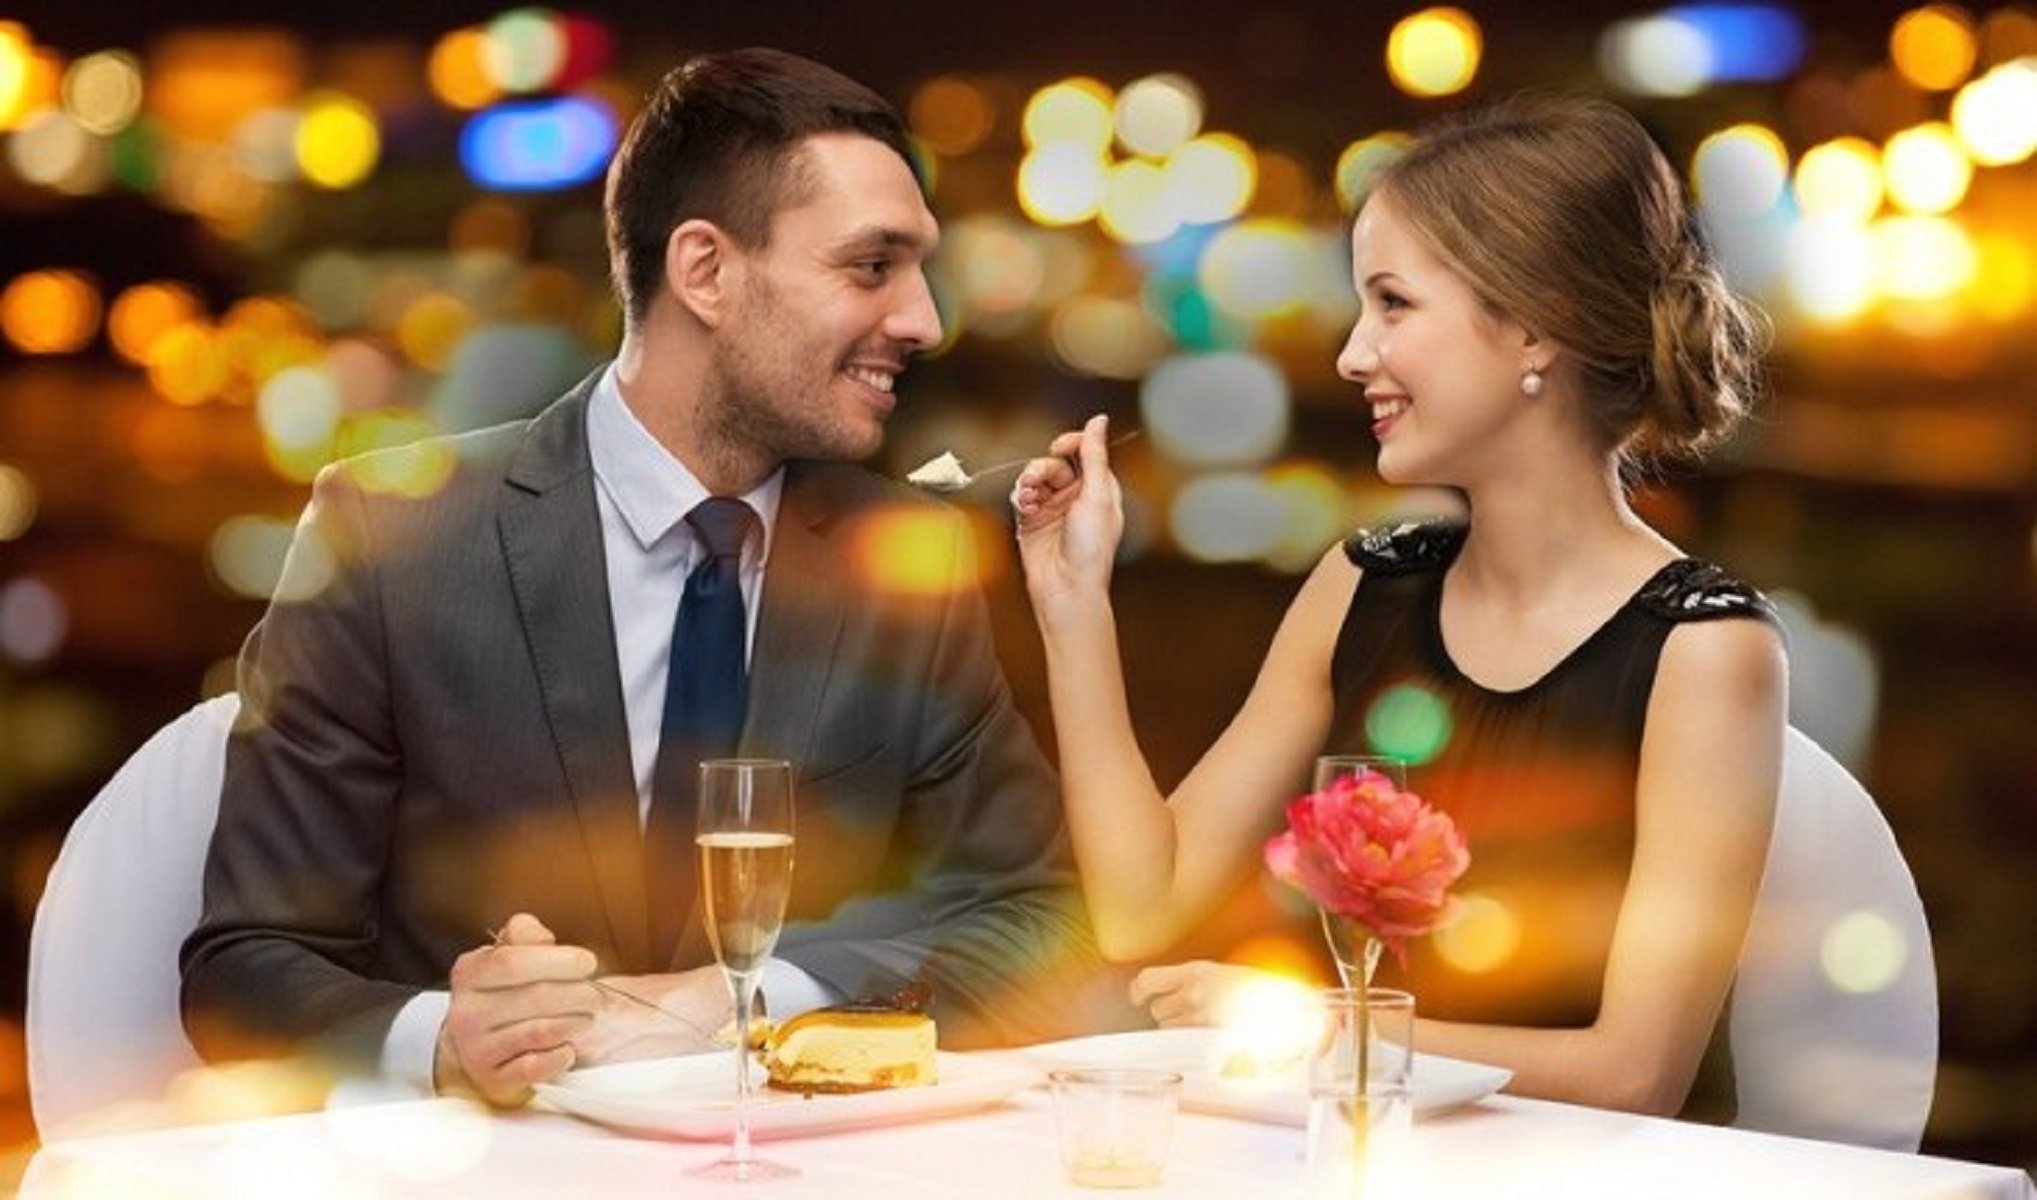 Жена порадовала мужа. Мужчина с девушкой в ресторане. Свидание в ресторане. Романтическое свидание. Романтический ужин в кафе.